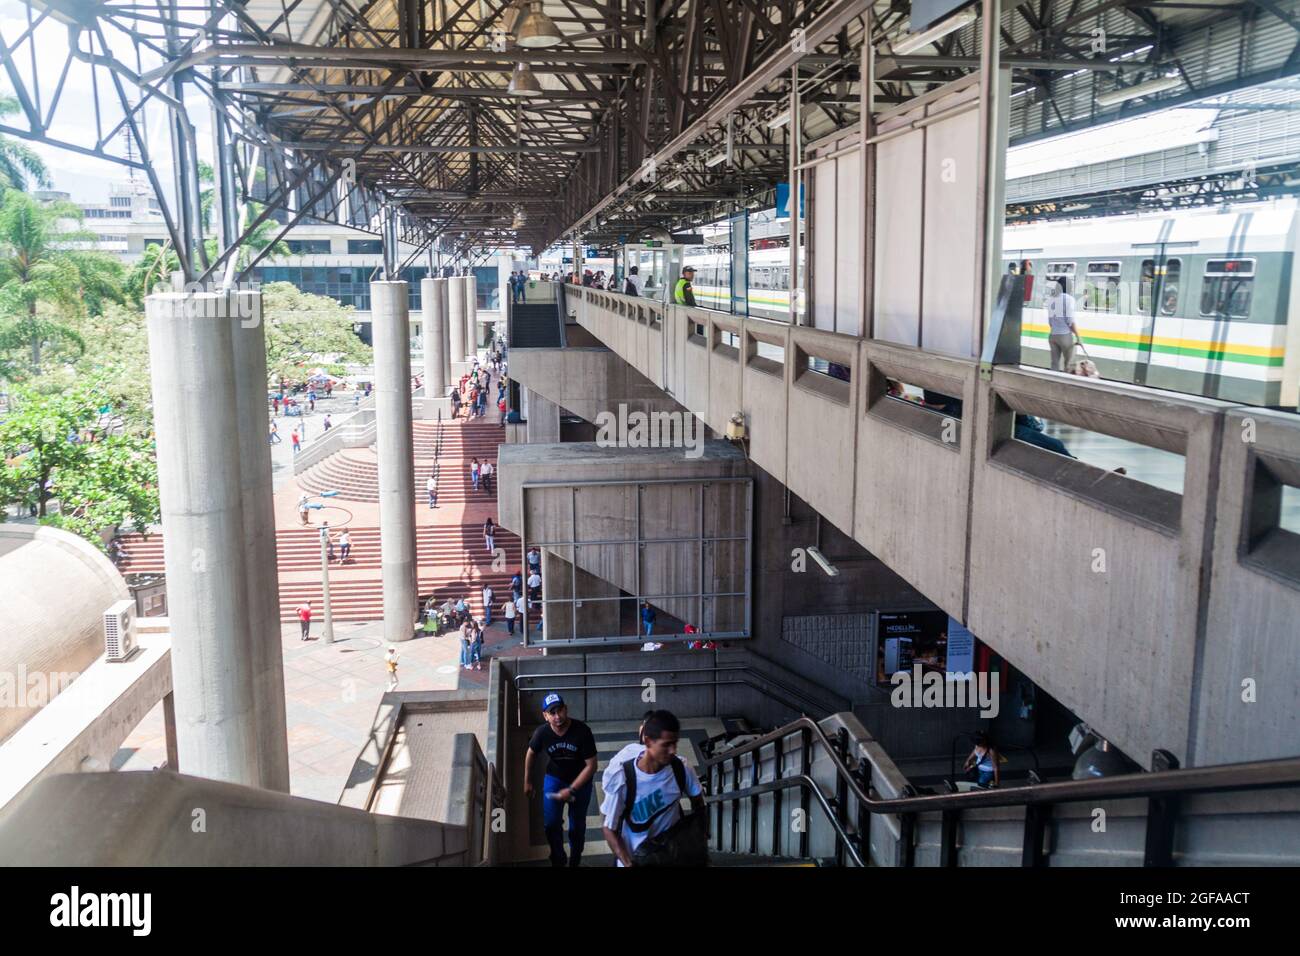 MEDELLIN, COLOMBIE - 4 SEPTEMBRE 2015 : station de métro surélevée Parque Berrio à Medellin. Banque D'Images